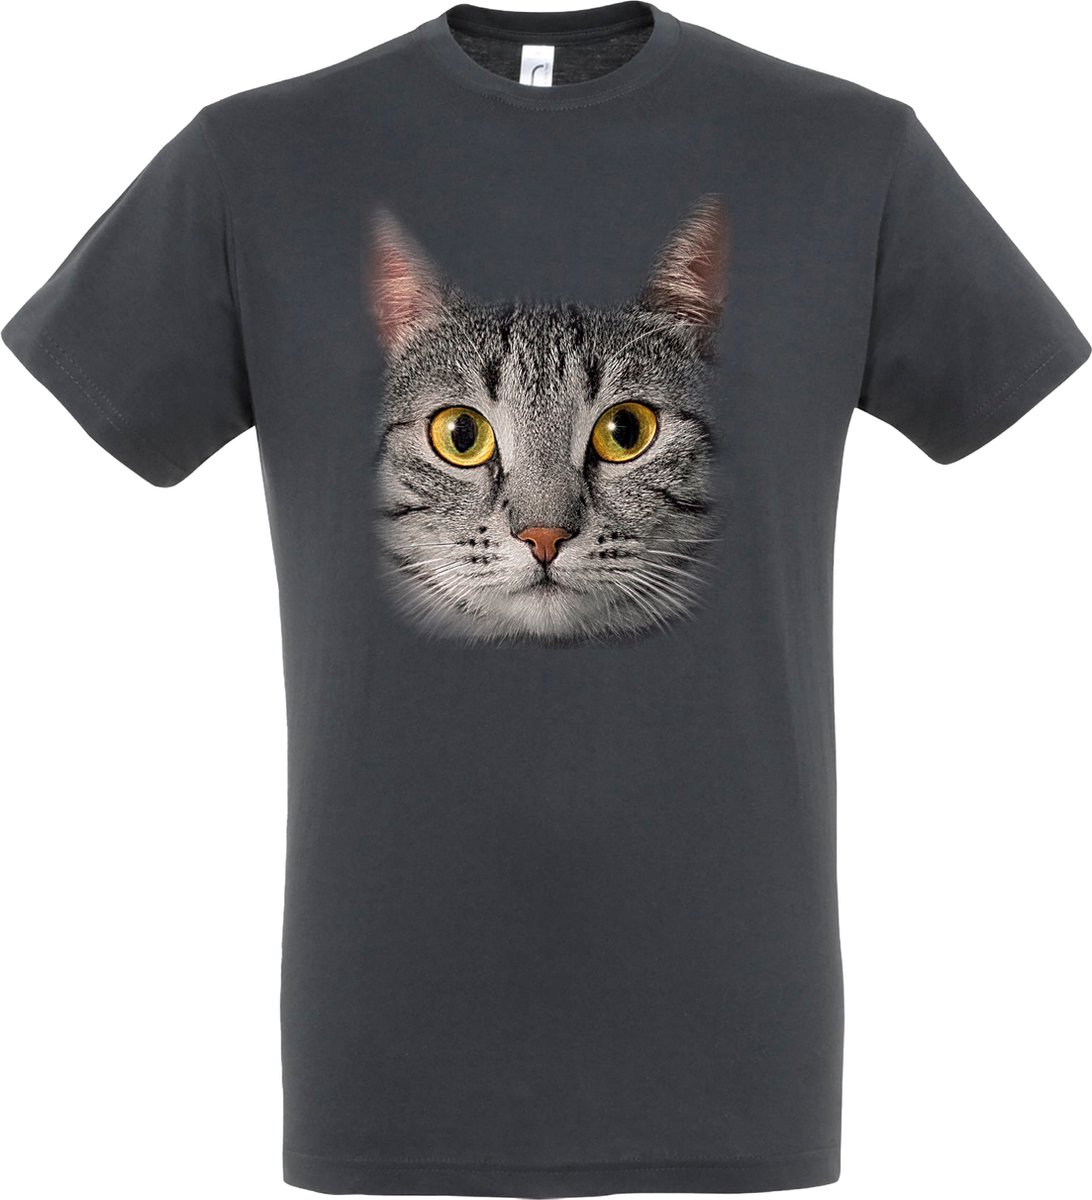 Plenty Gifts T-shirt Grey Cat Eyes S